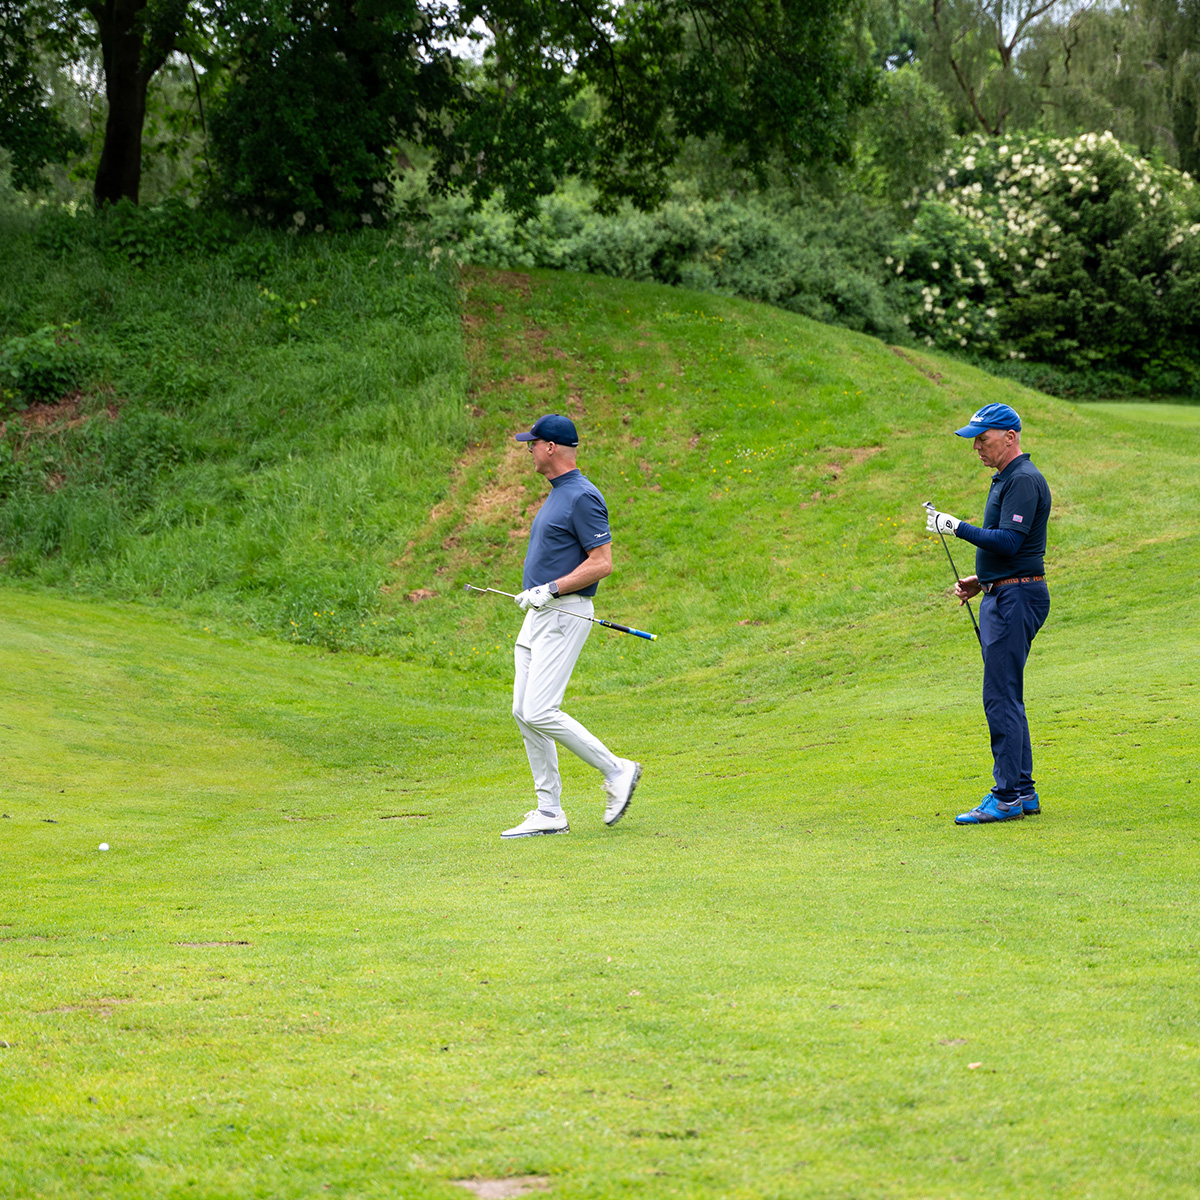 Zwei Golfer in sportlicher Kleidung, die auf einem Golfplatz nebeneinander stehen und ihre Schläger halten. Der Rasen ist grün und gepflegt.